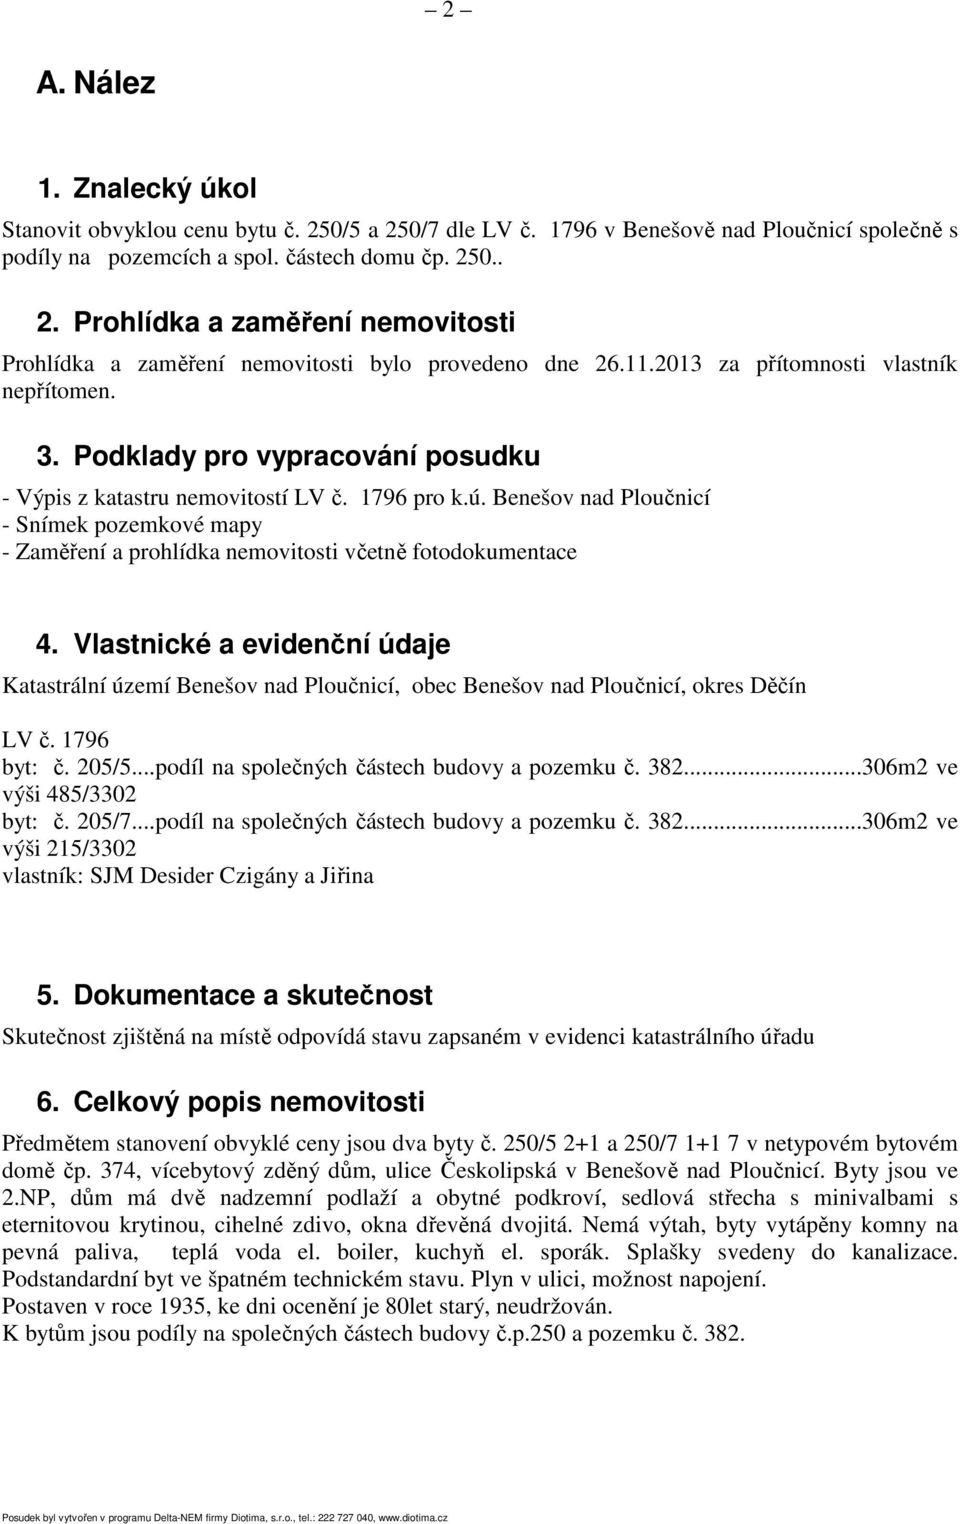 Benešov nad Ploučnicí - Snímek pozemkové mapy - Zaměření a prohlídka nemovitosti včetně fotodokumentace 4.